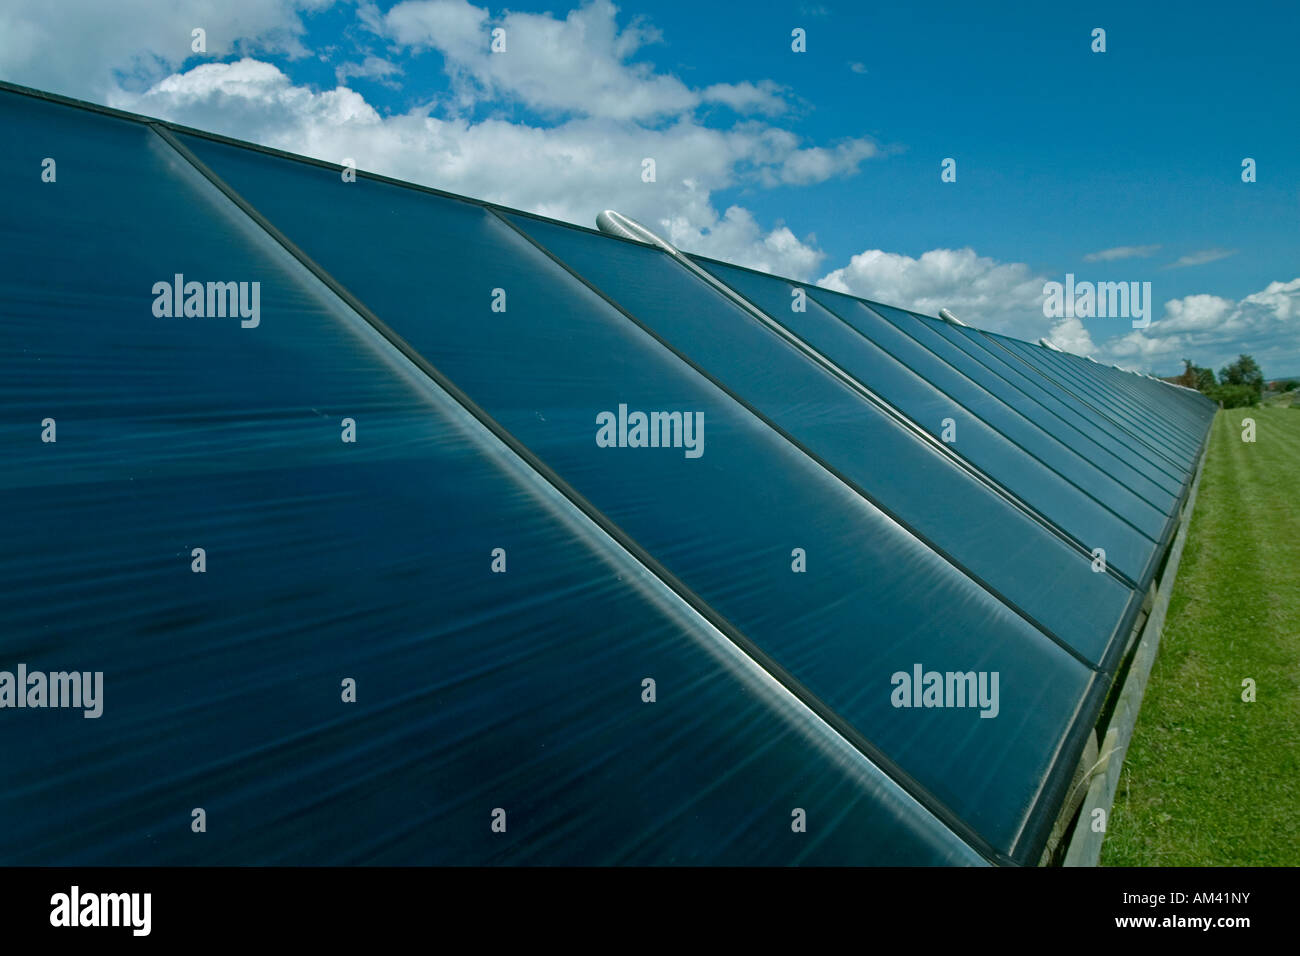 Energia solare impianto Aeroe Marstal Danimarca Foto Stock